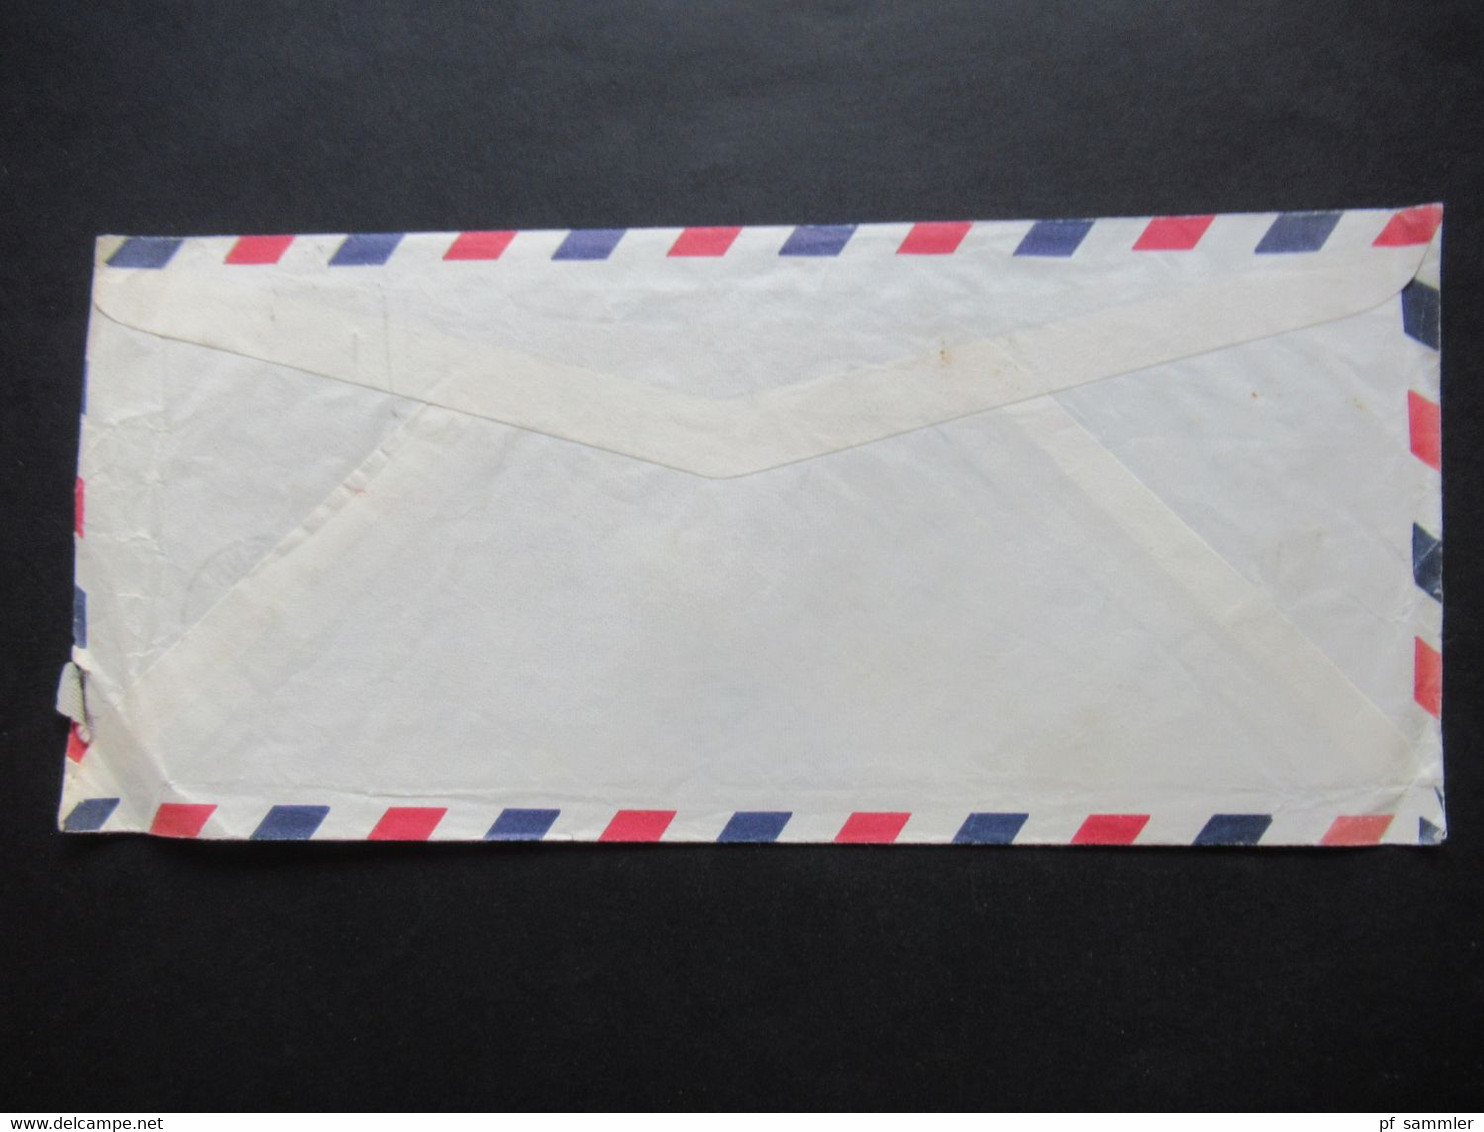 Niederlande 1958 Air Mail Aus Washington Netherlands Embassy Ministerie Van Buitenlandse Zaken Dienstbrief Der Botschaft - Briefe U. Dokumente